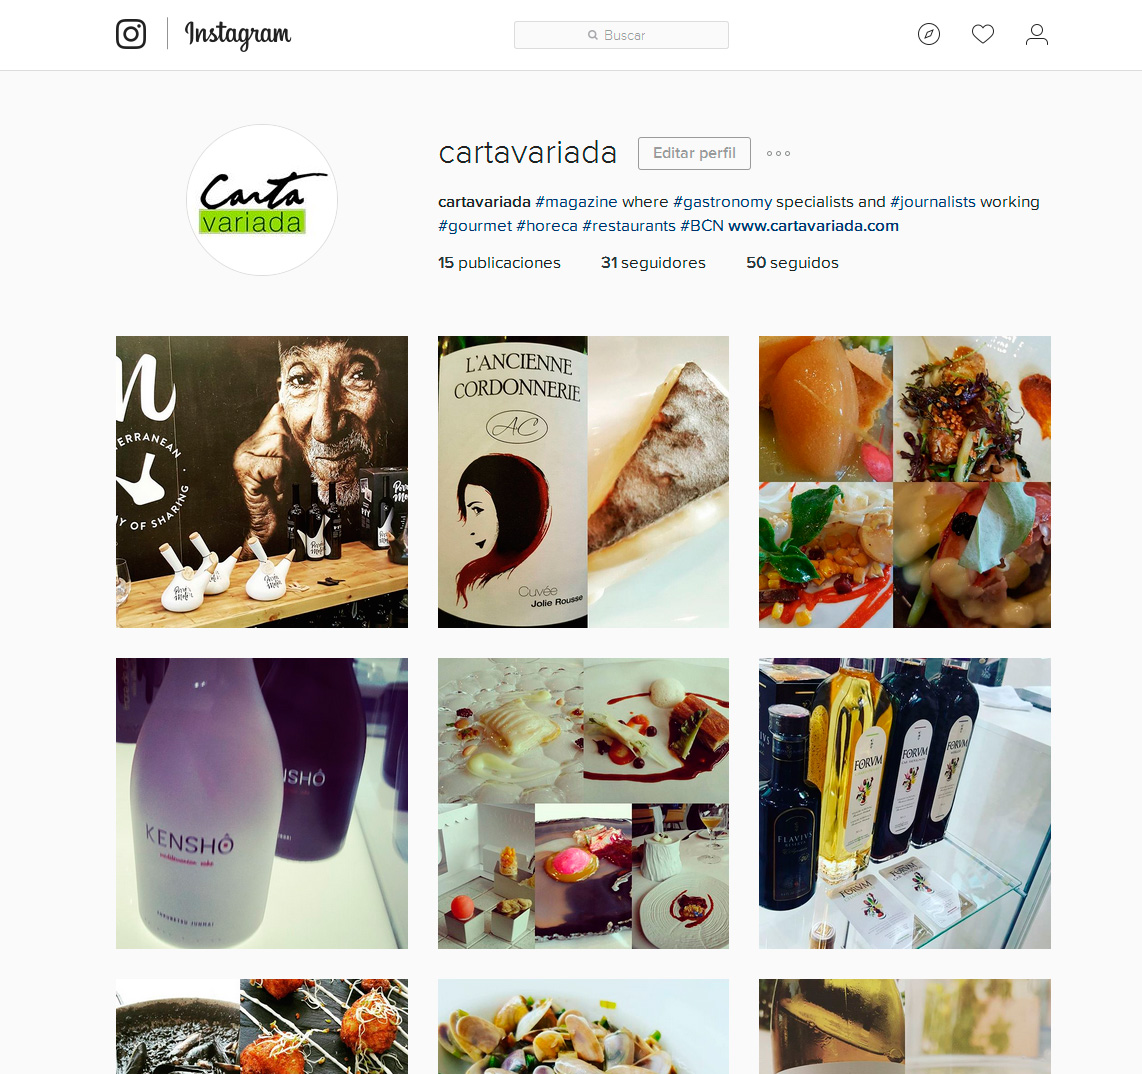 Ya podéis seguir el nuevo instagram de cartavariada